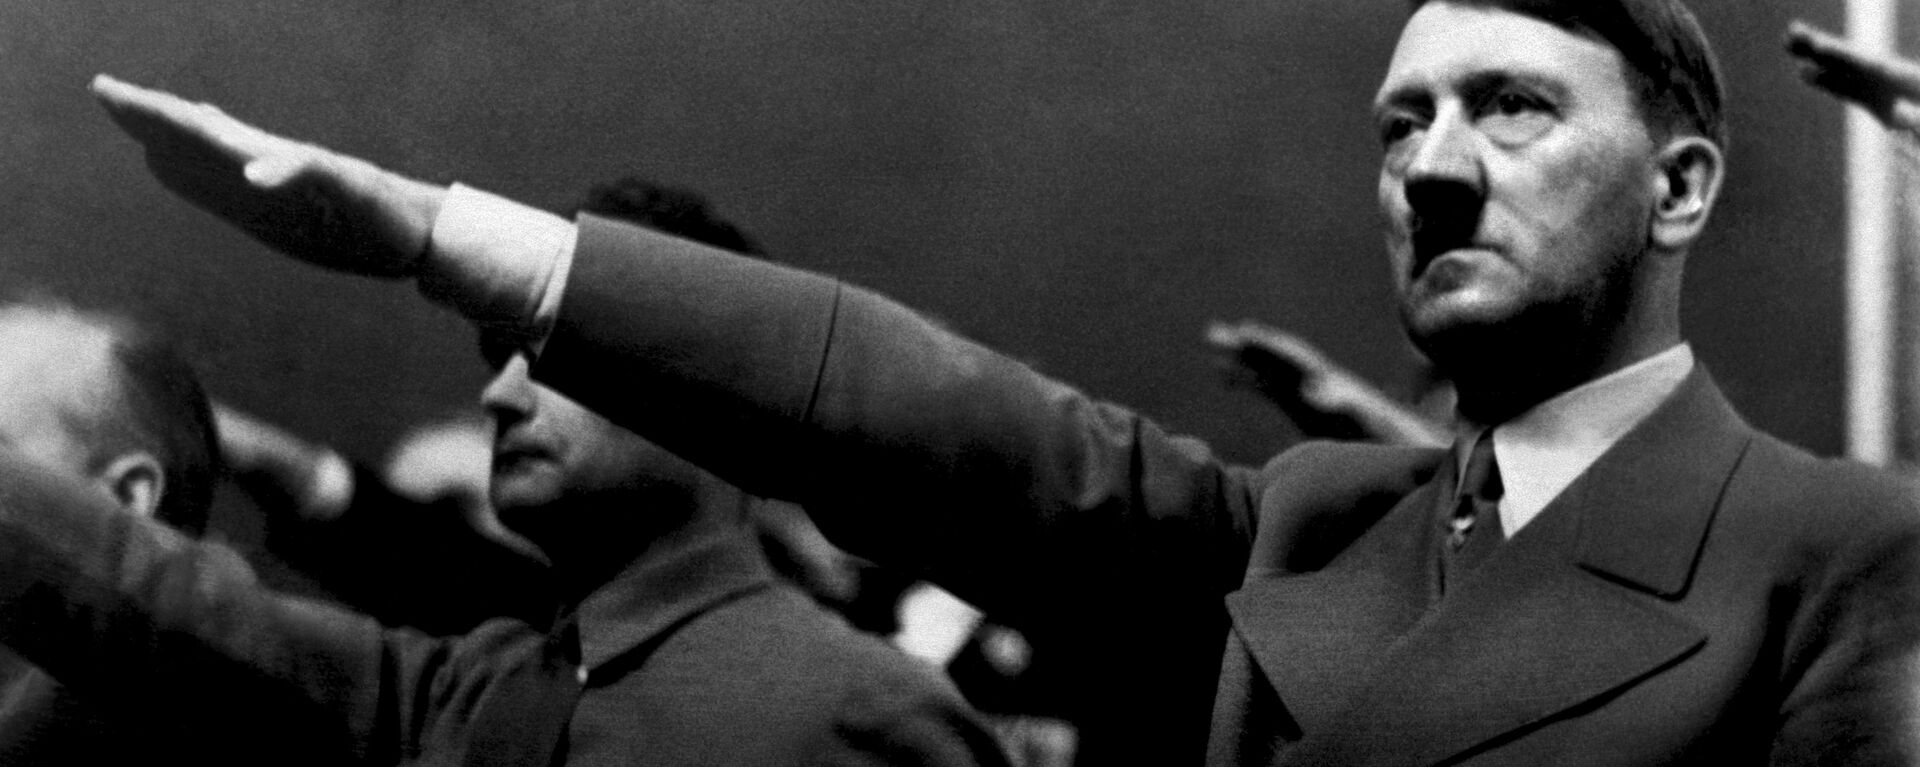 Adolf Hitler i Rudolf Hes 1939. godine. - Sputnik Srbija, 1920, 18.12.2020